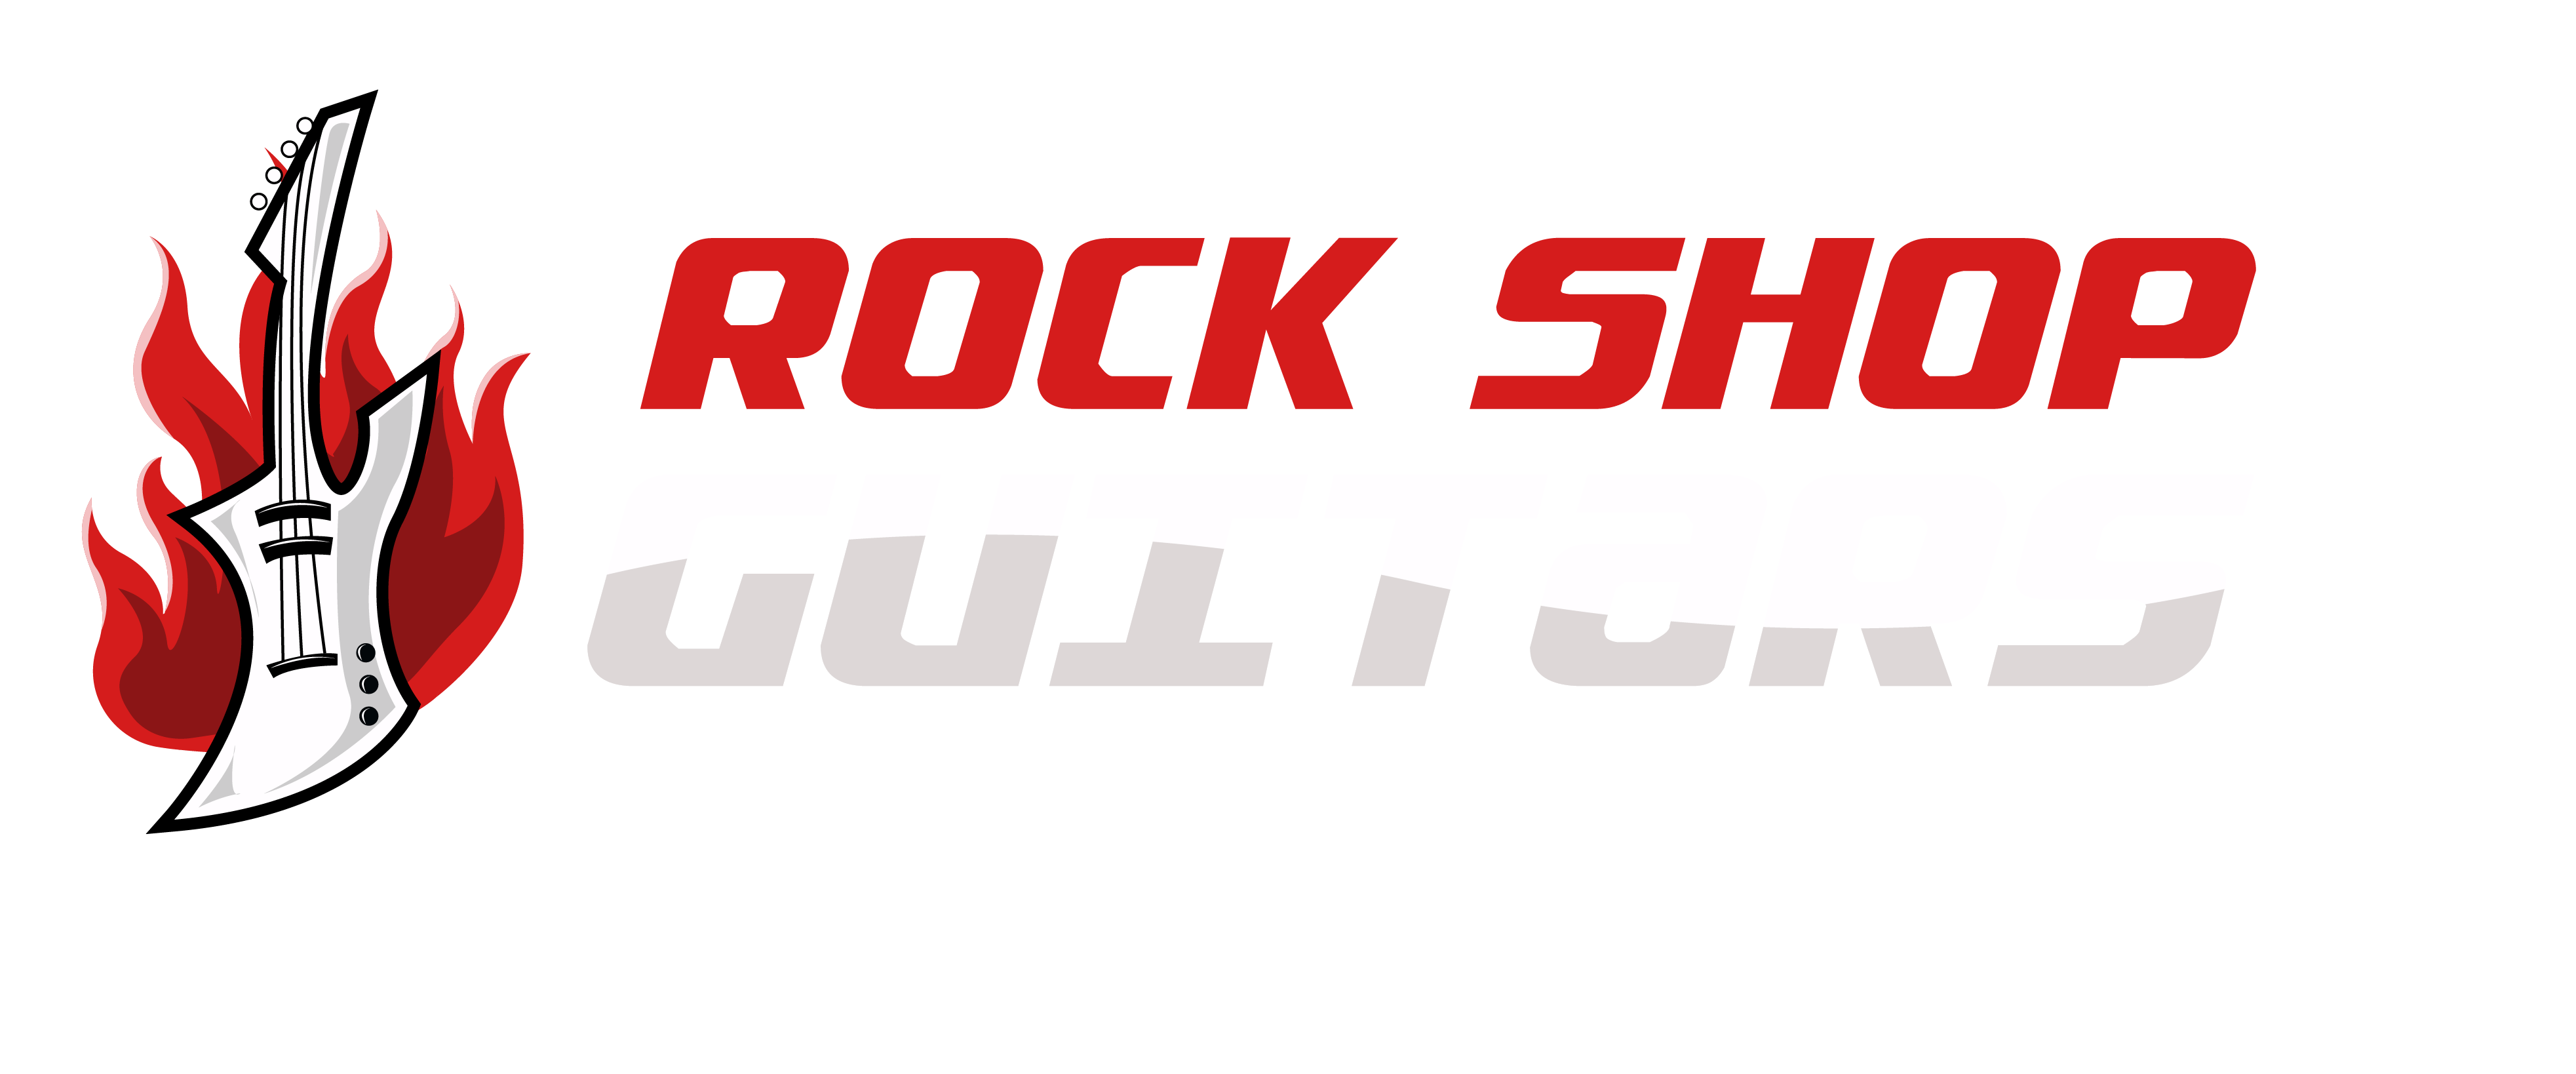 Rock Shop Guitars